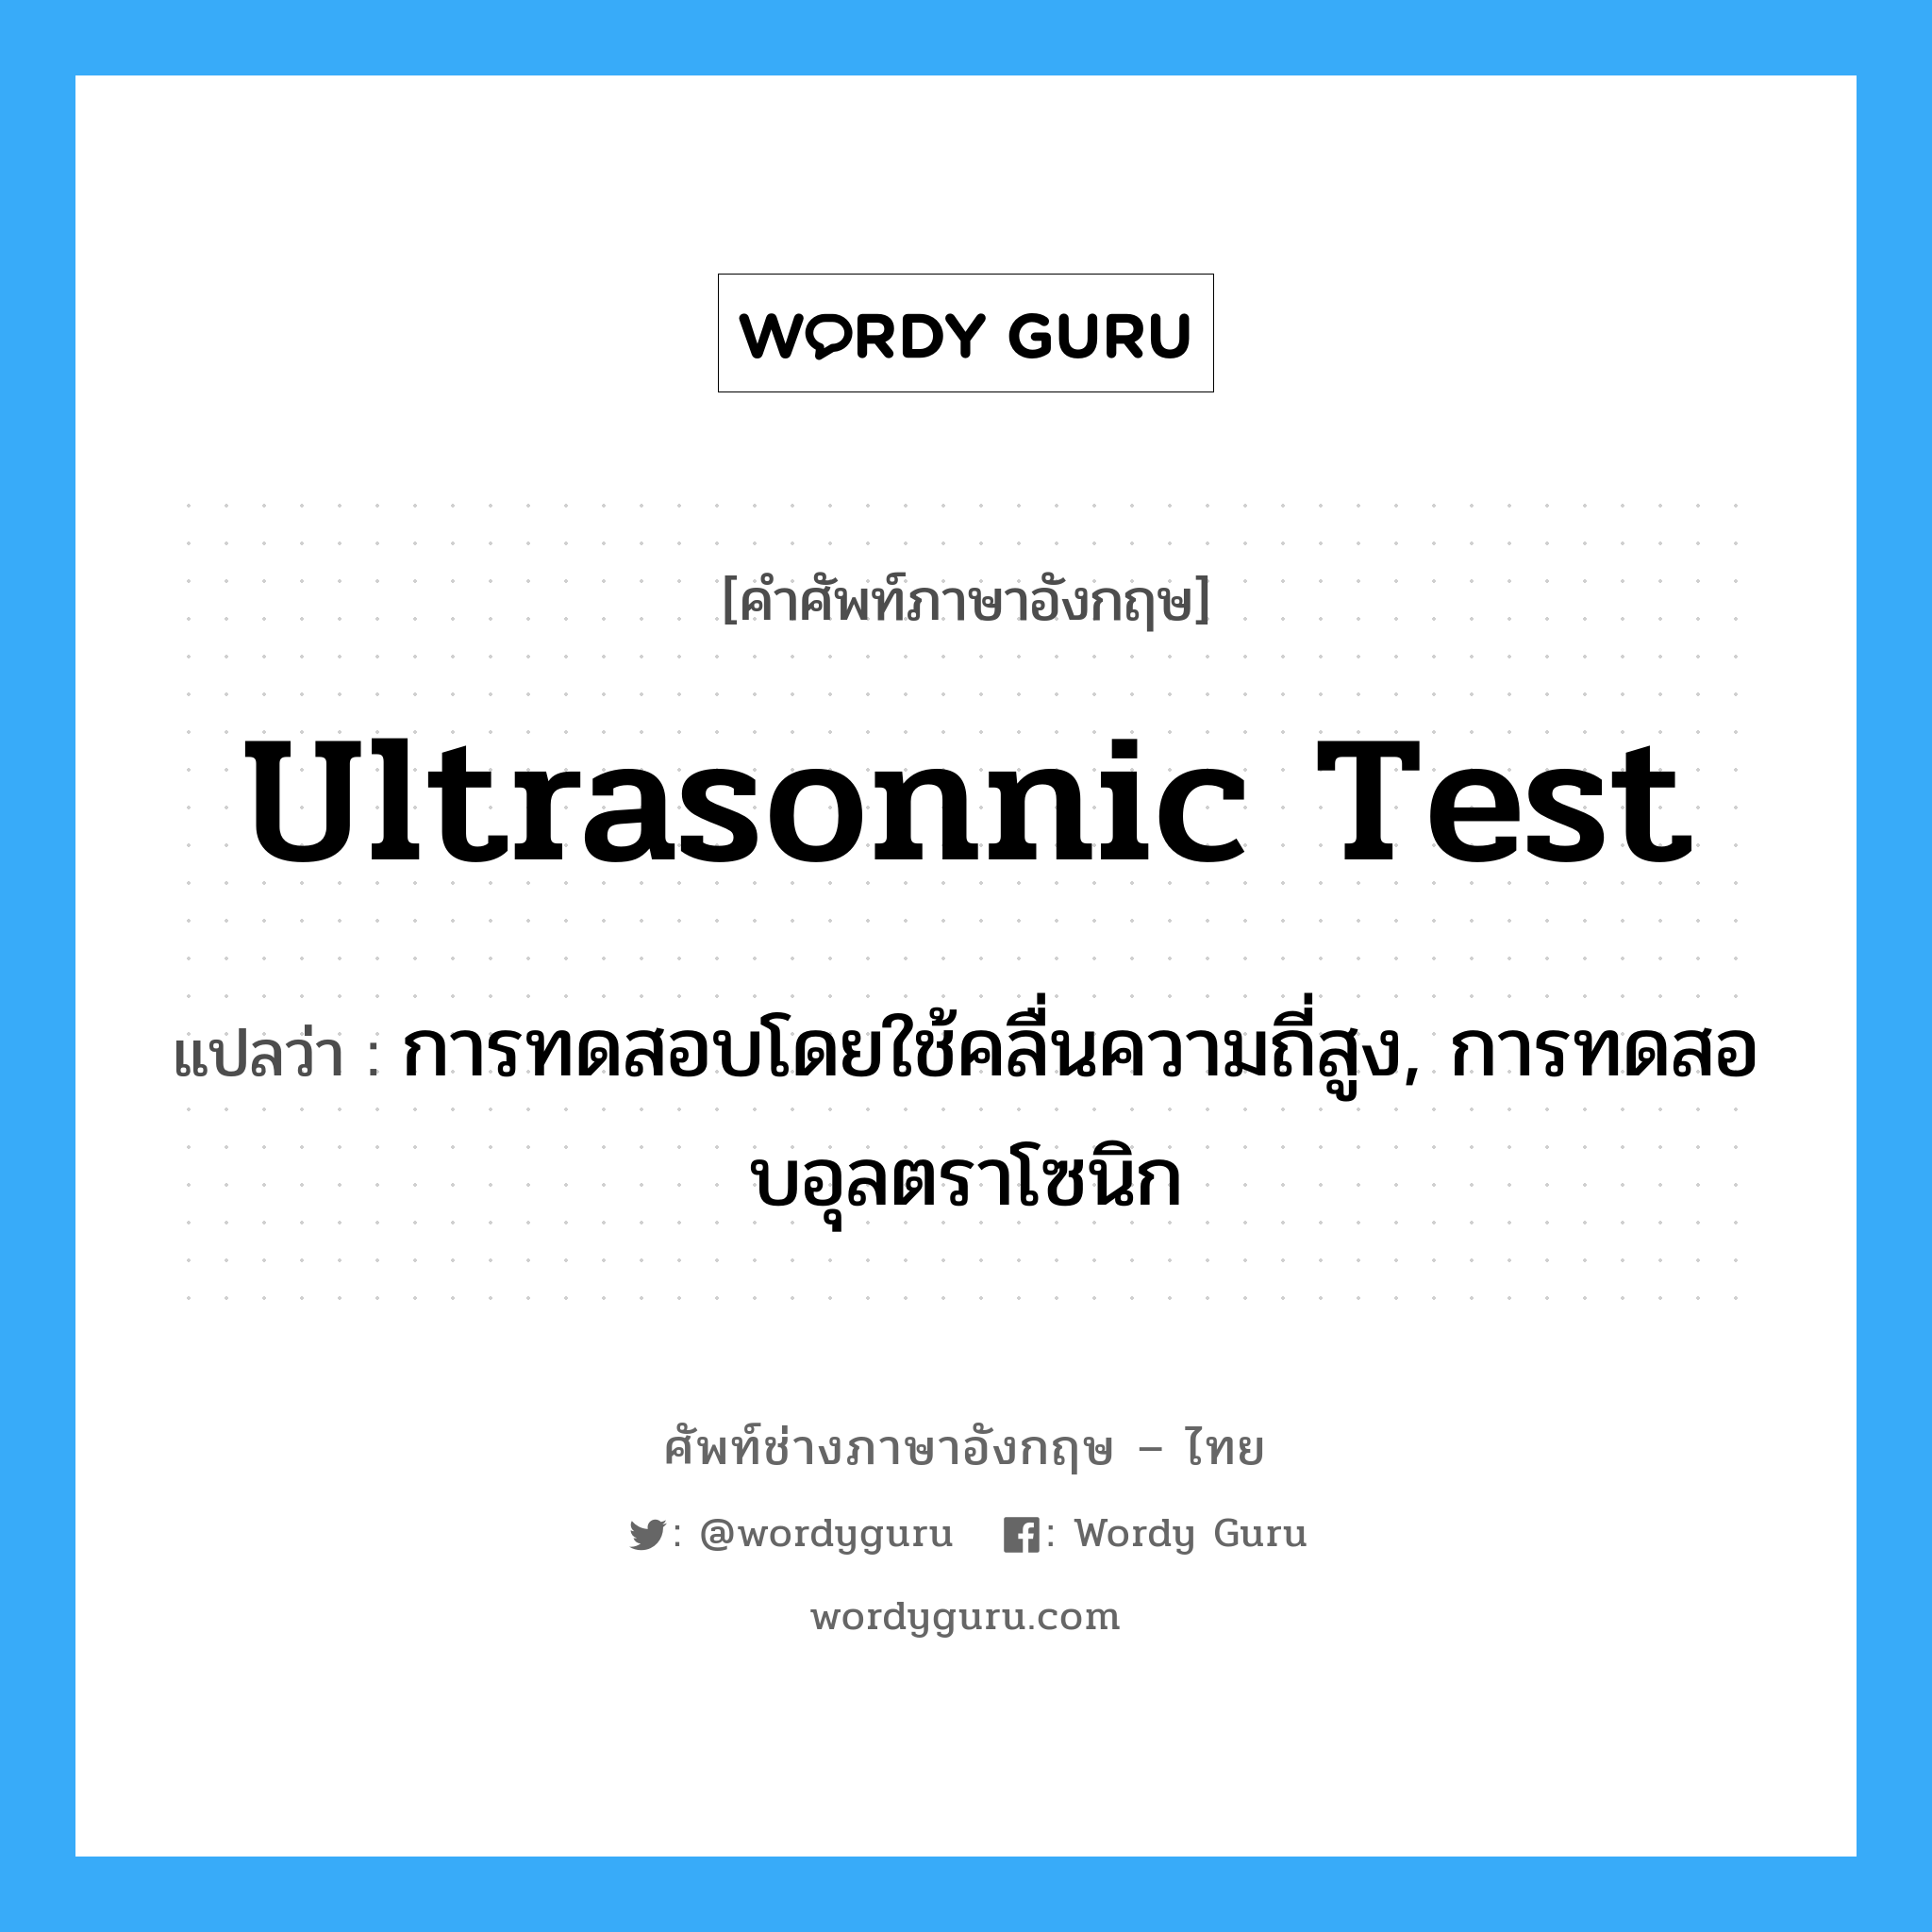 ultrasonnic test แปลว่า?, คำศัพท์ช่างภาษาอังกฤษ - ไทย ultrasonnic test คำศัพท์ภาษาอังกฤษ ultrasonnic test แปลว่า การทดสอบโดยใช้คลื่นความถี่สูง, การทดสอบอุลตราโซนิก